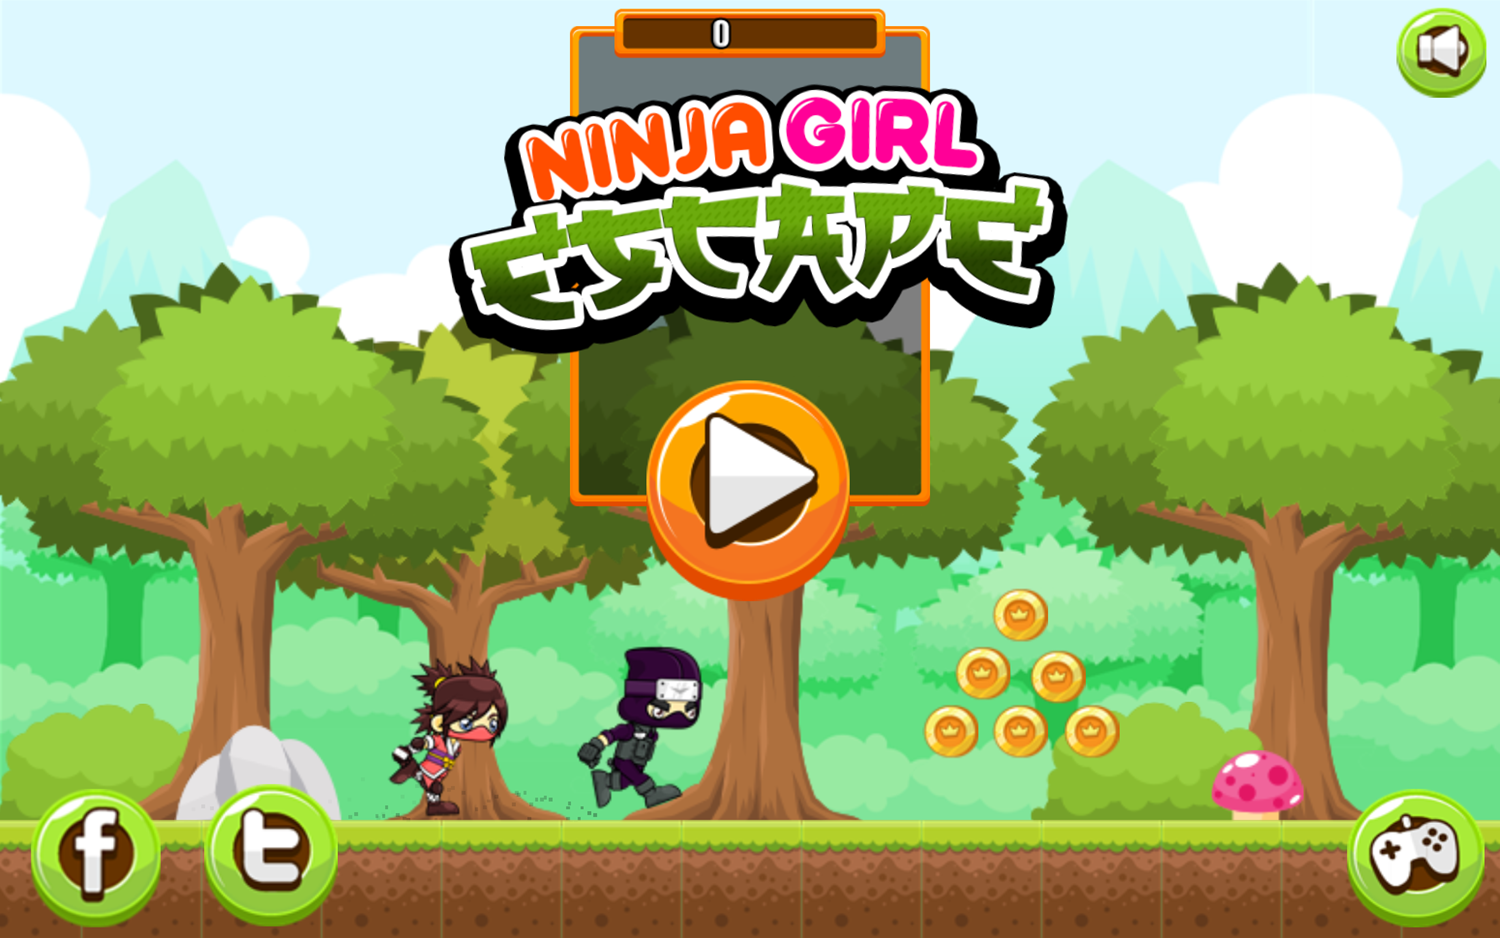 Ninja Girl Escape Game Welcome Screen Screenshot.